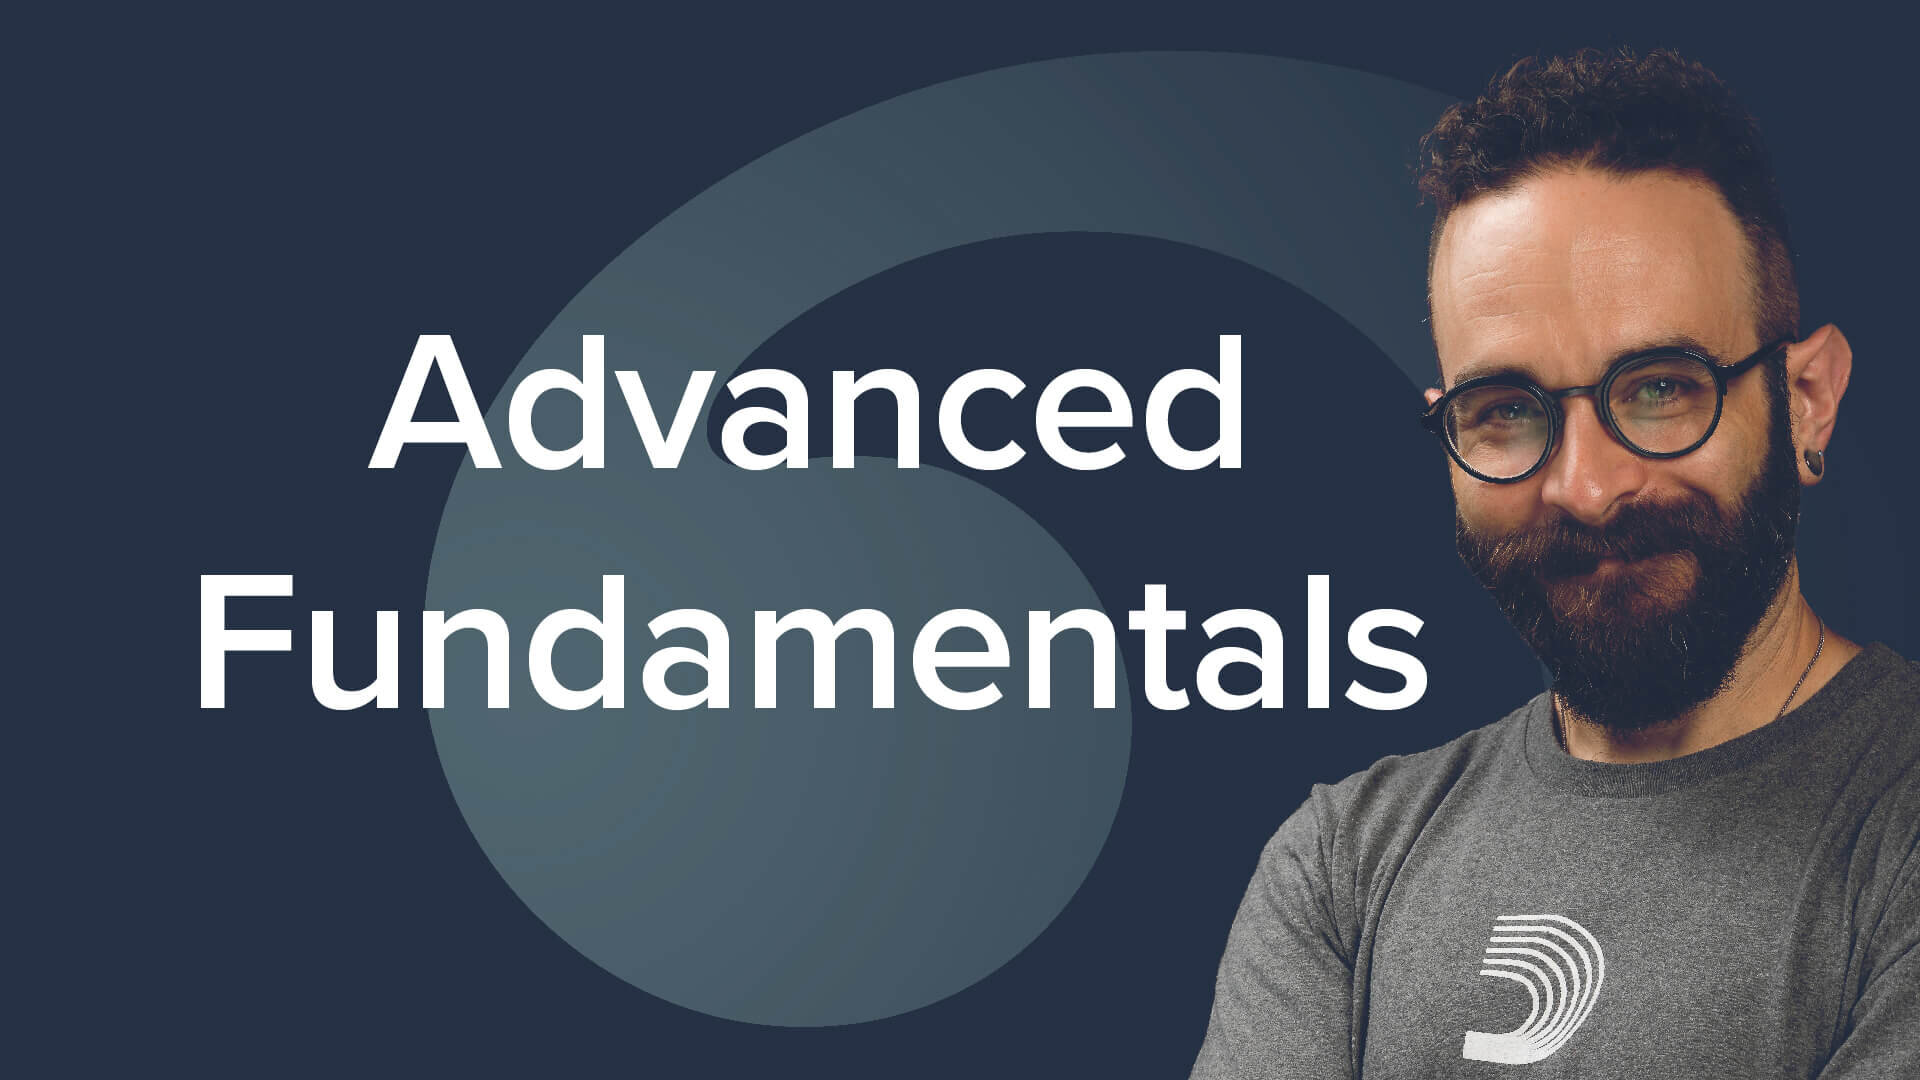 Advanced Fundamentals - David Allen Moore